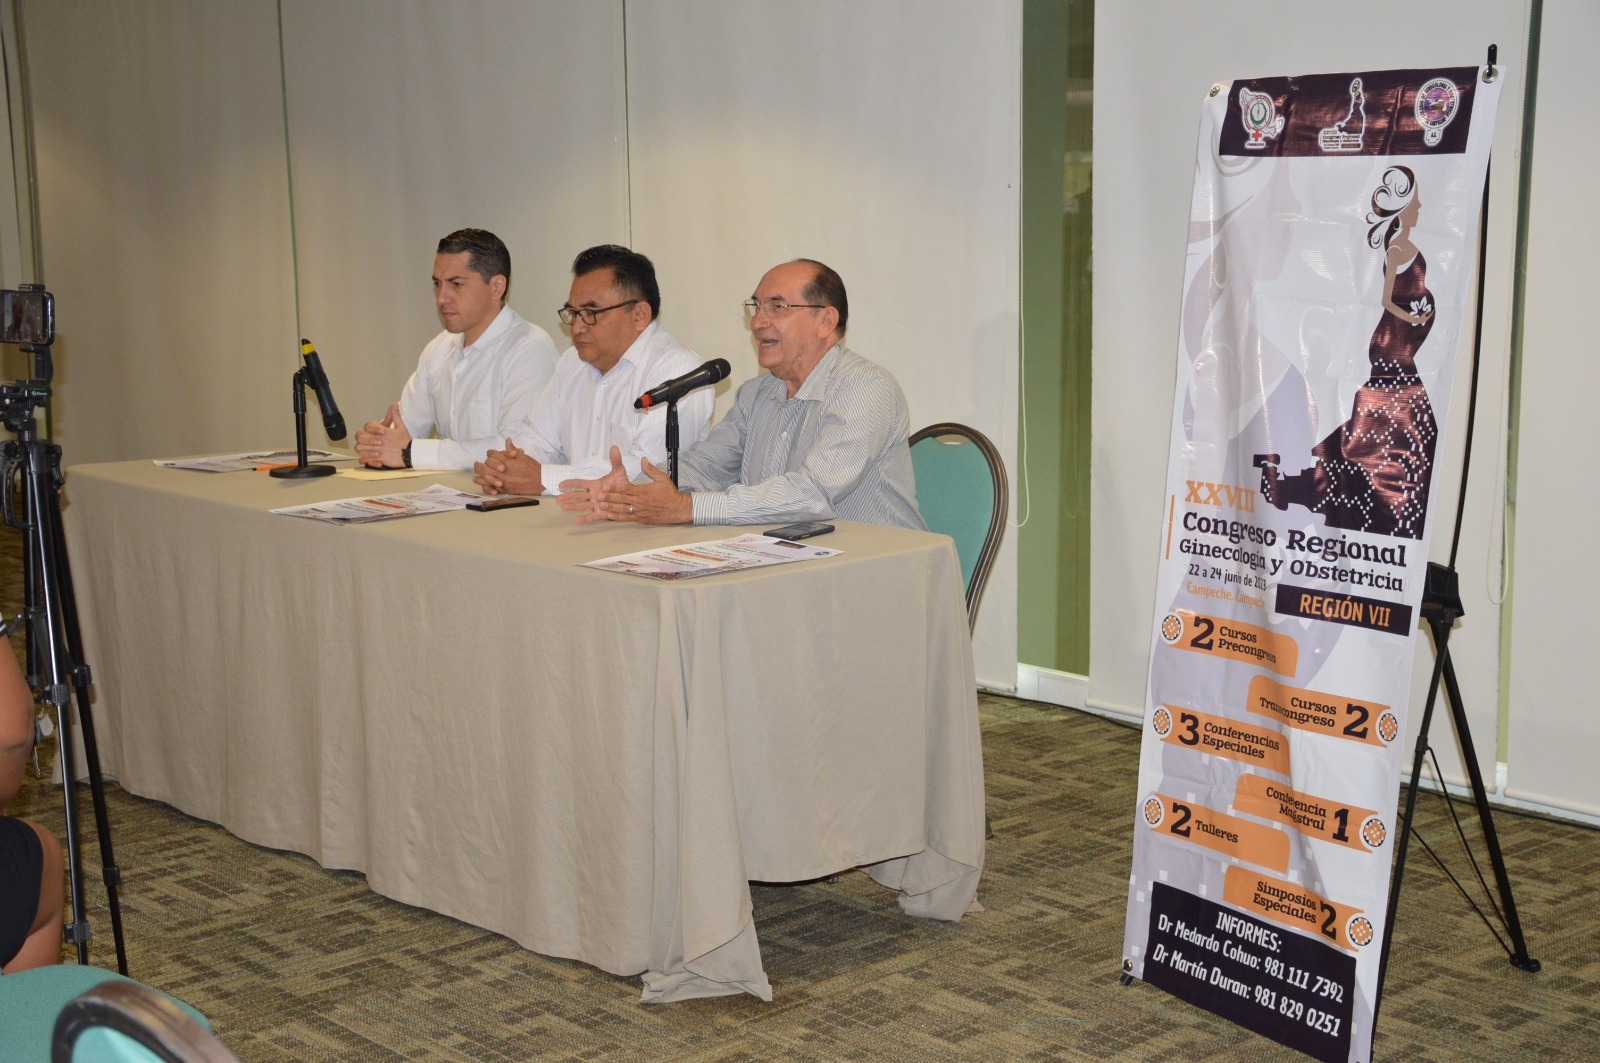 En Campeche, 300 médicos del Sureste se reunirán en Congreso de Ginecología y Obstetricia